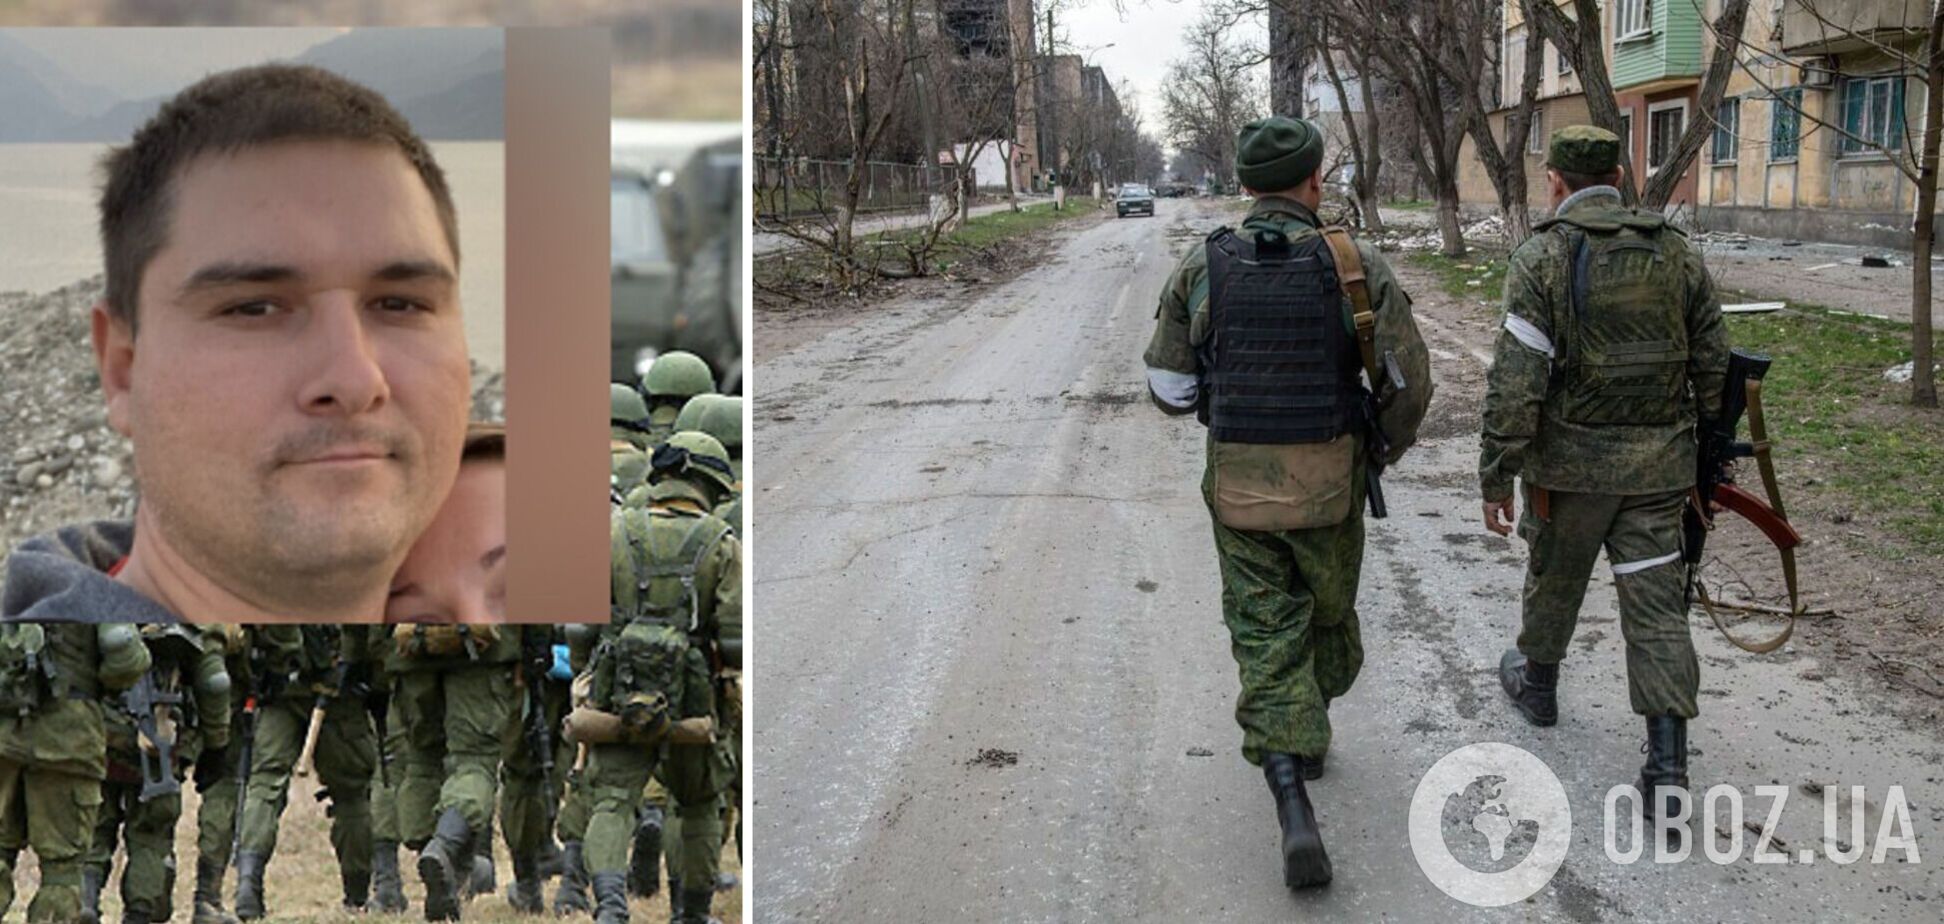 Ідентифіковано двох окупантів, що зґвалтували українку на Запоріжжі: їм повідомили про підозру